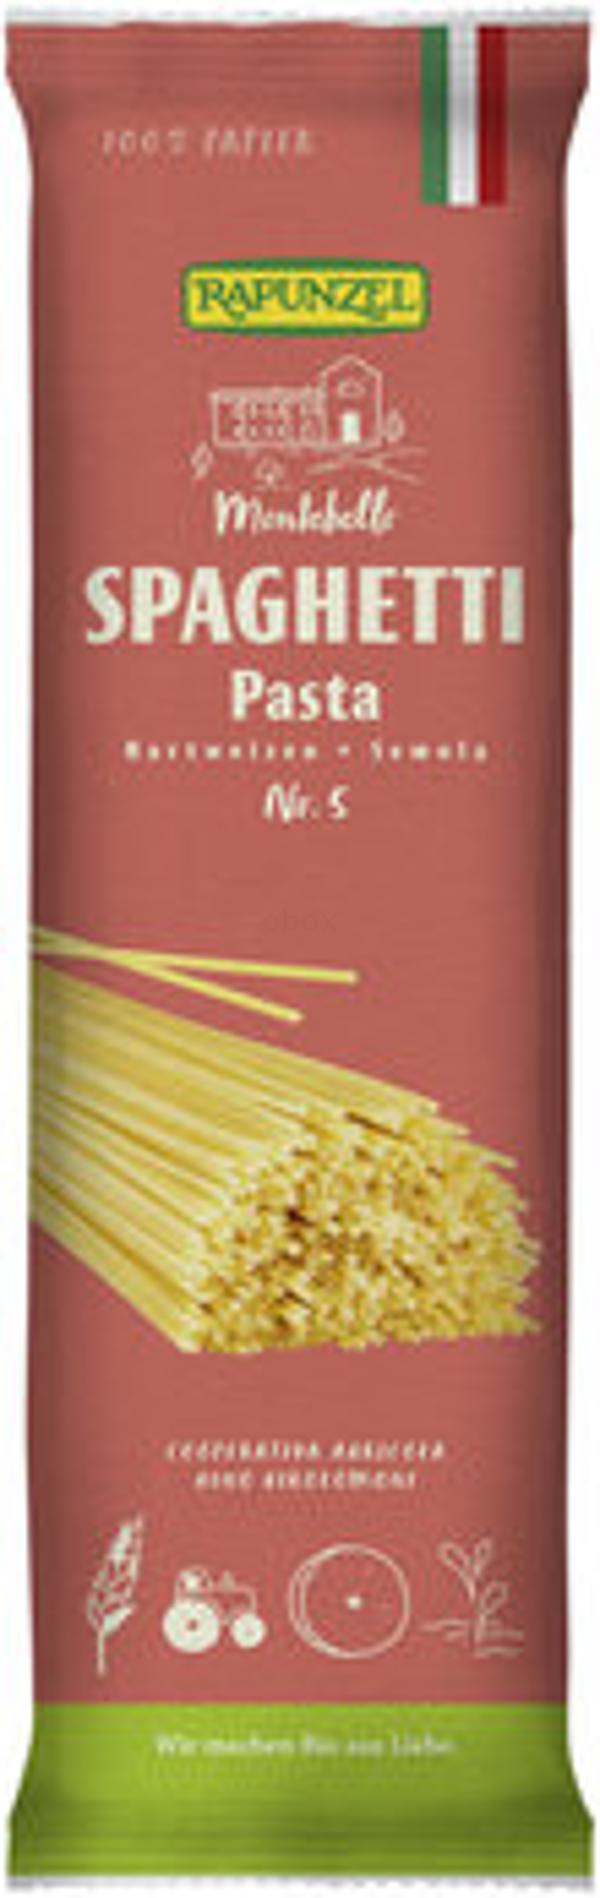 Produktfoto zu Spaghetti No.5